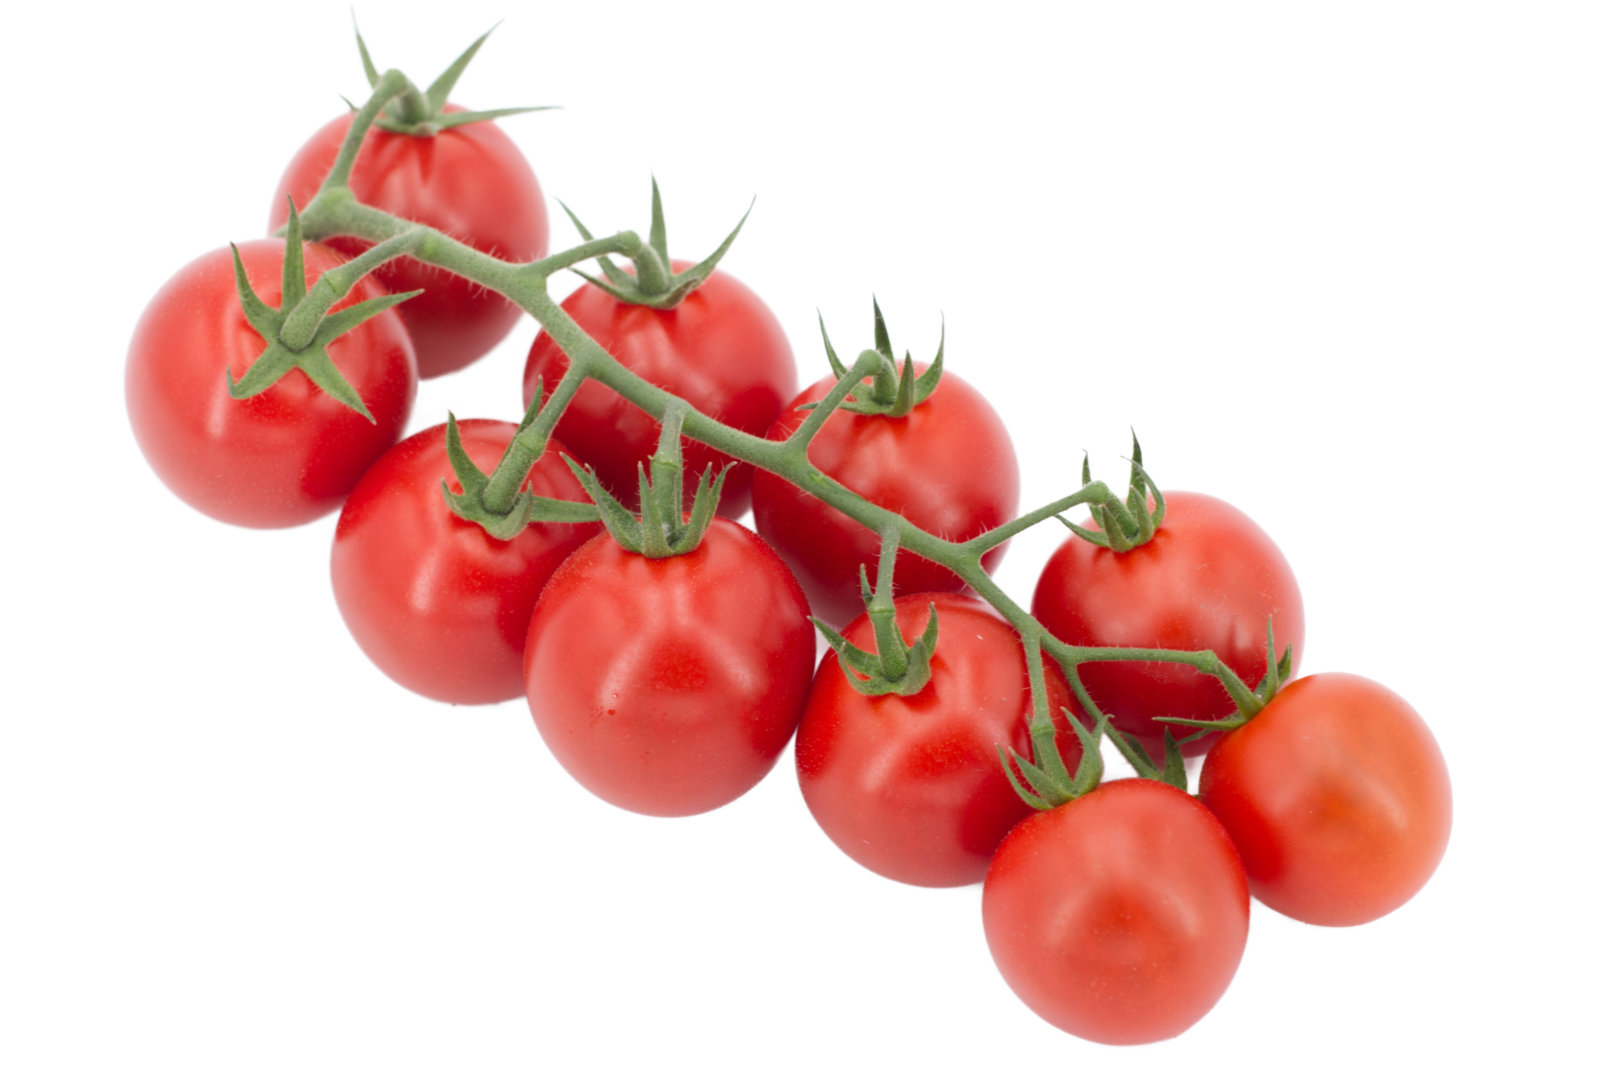 Cherrystraucht. 3kg -Tomato4you-